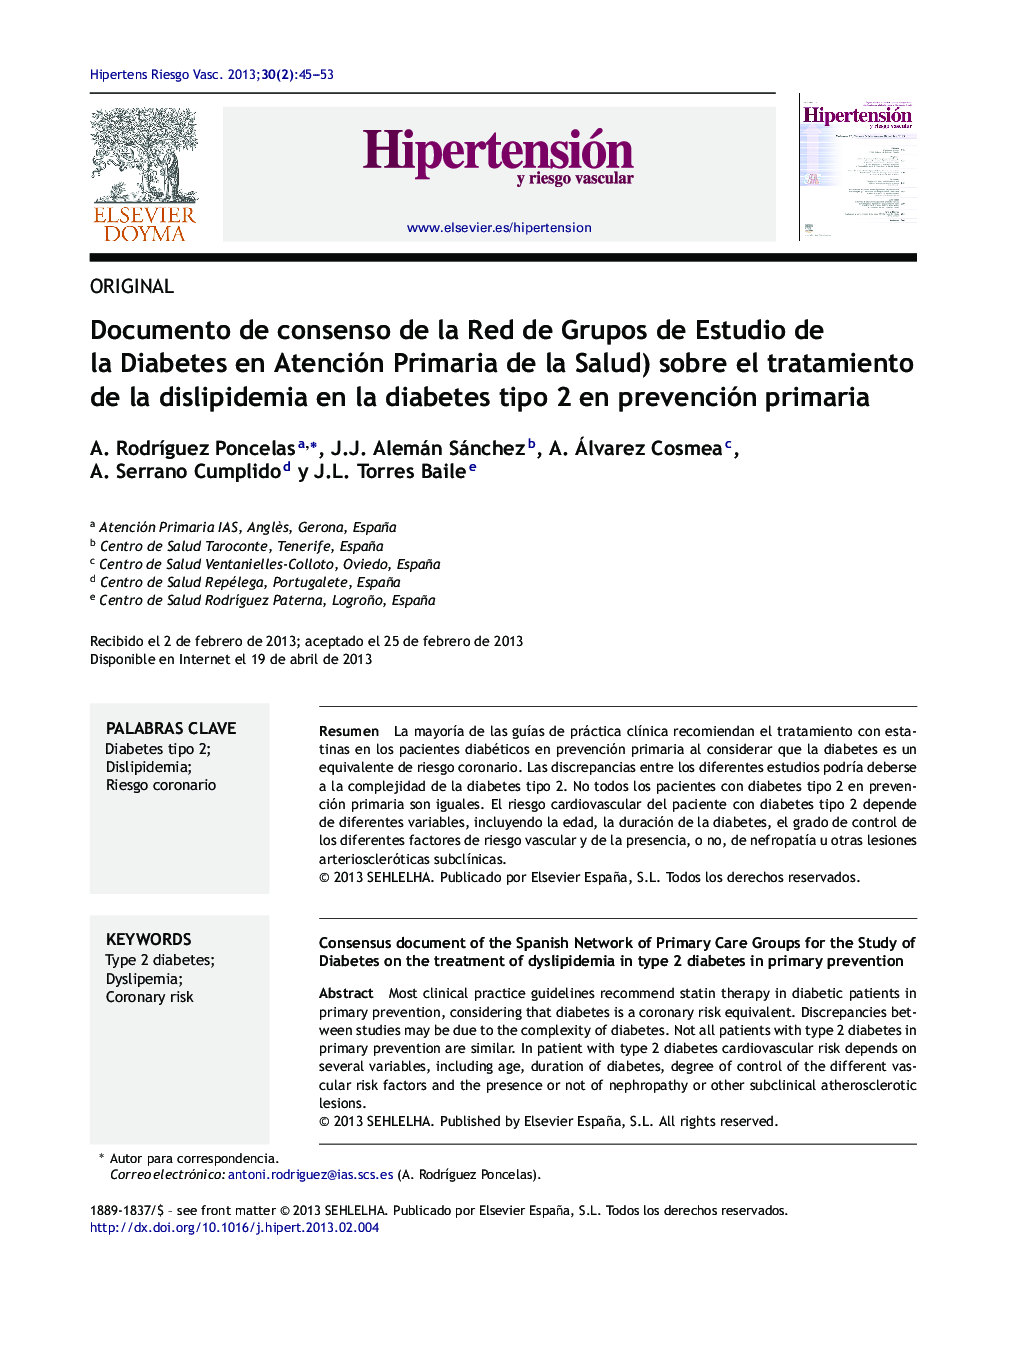 Documento de consenso de la Red de Grupos de Estudio de la Diabetes en Atención Primaria de la Salud) sobre el tratamiento de la dislipidemia en la diabetes tipo 2 en prevención primaria